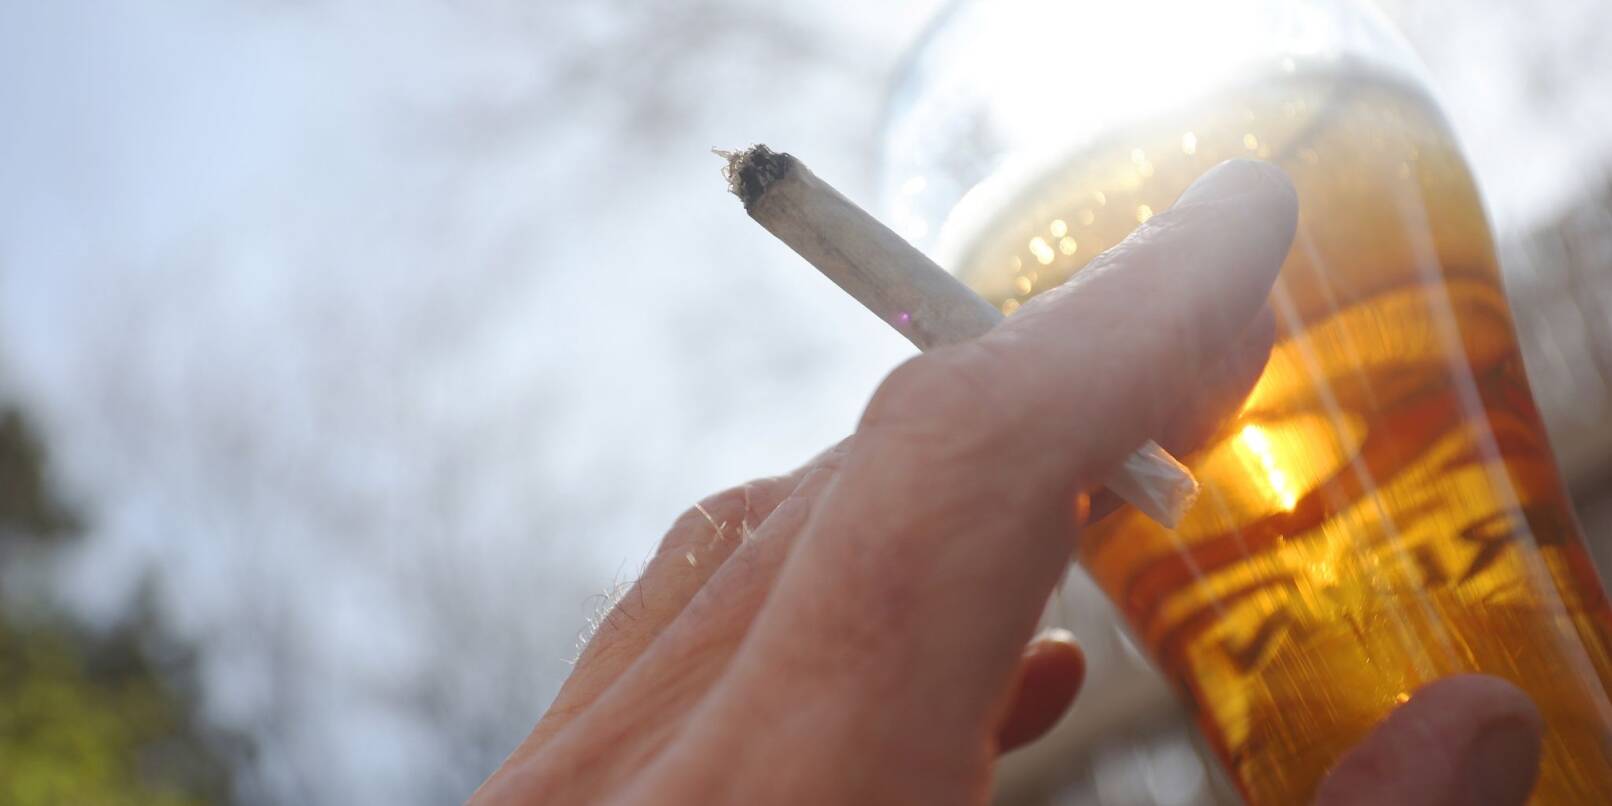 Seit dem 1. April dürfen Erwachsene in Deutschland Cannabis in bestimmten Mengen anbauen, besitzen und konsumieren.